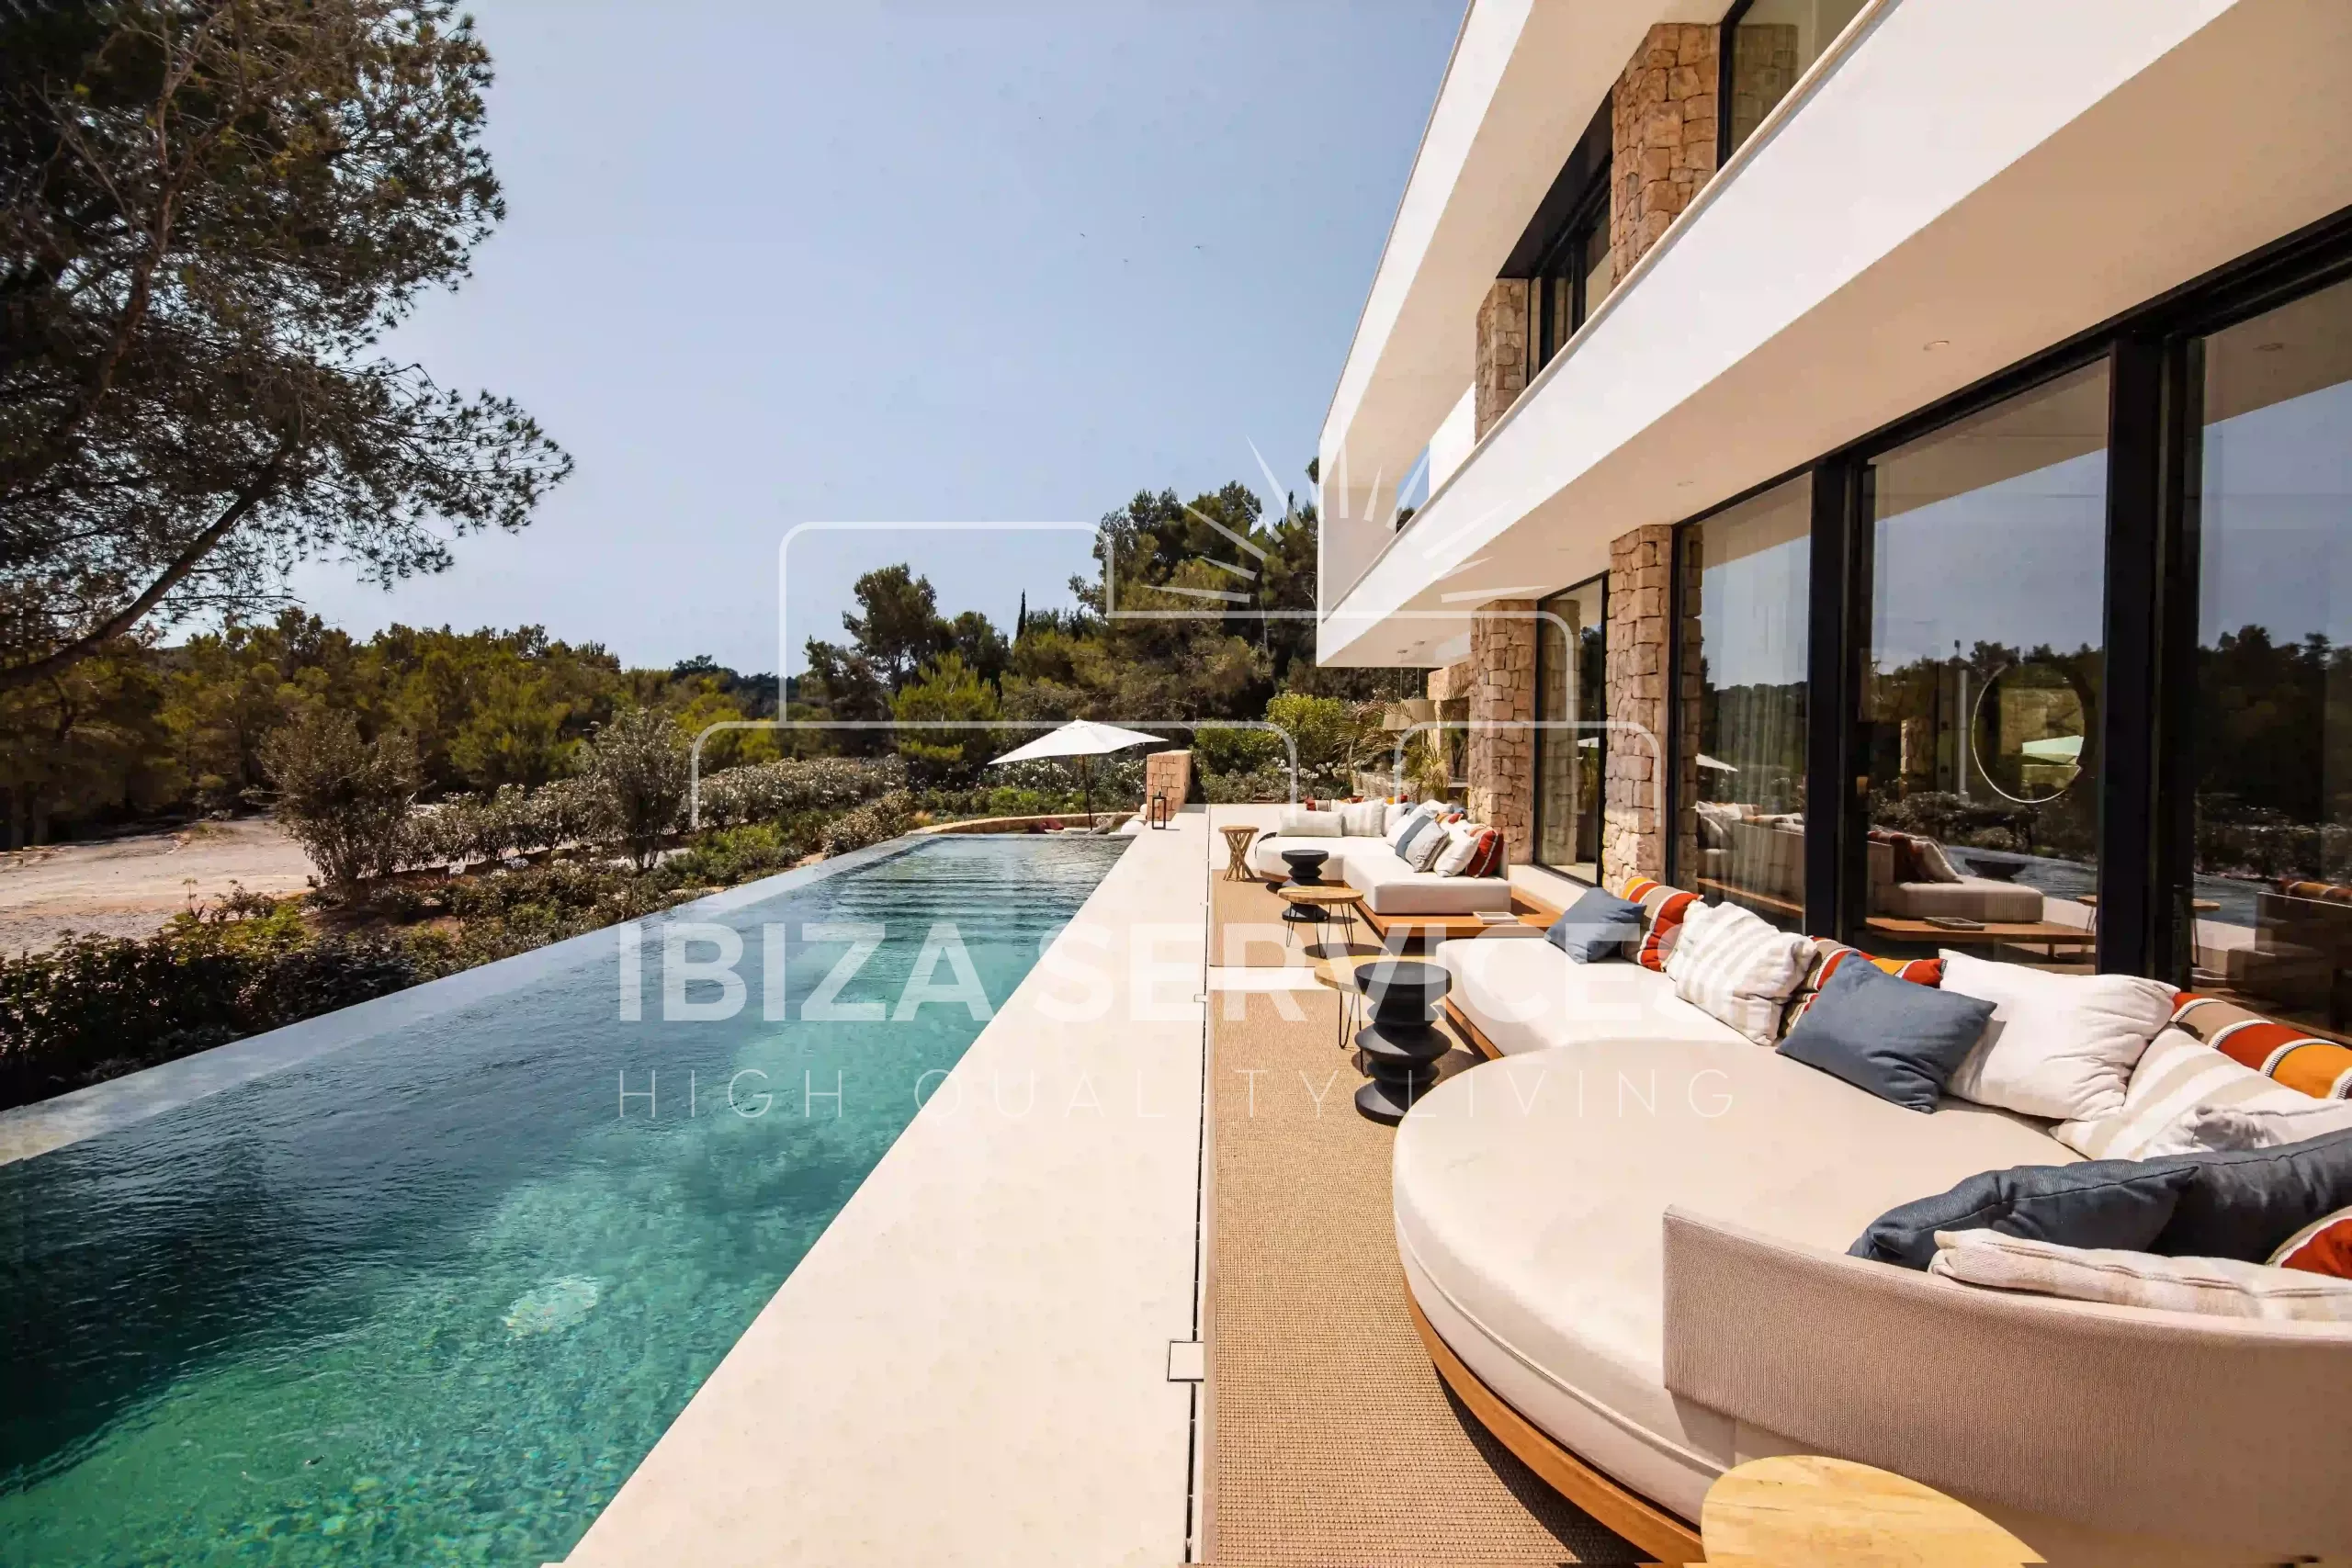 Exclusieve kans in Roca Llisa: Jouw droomhuis op Ibiza